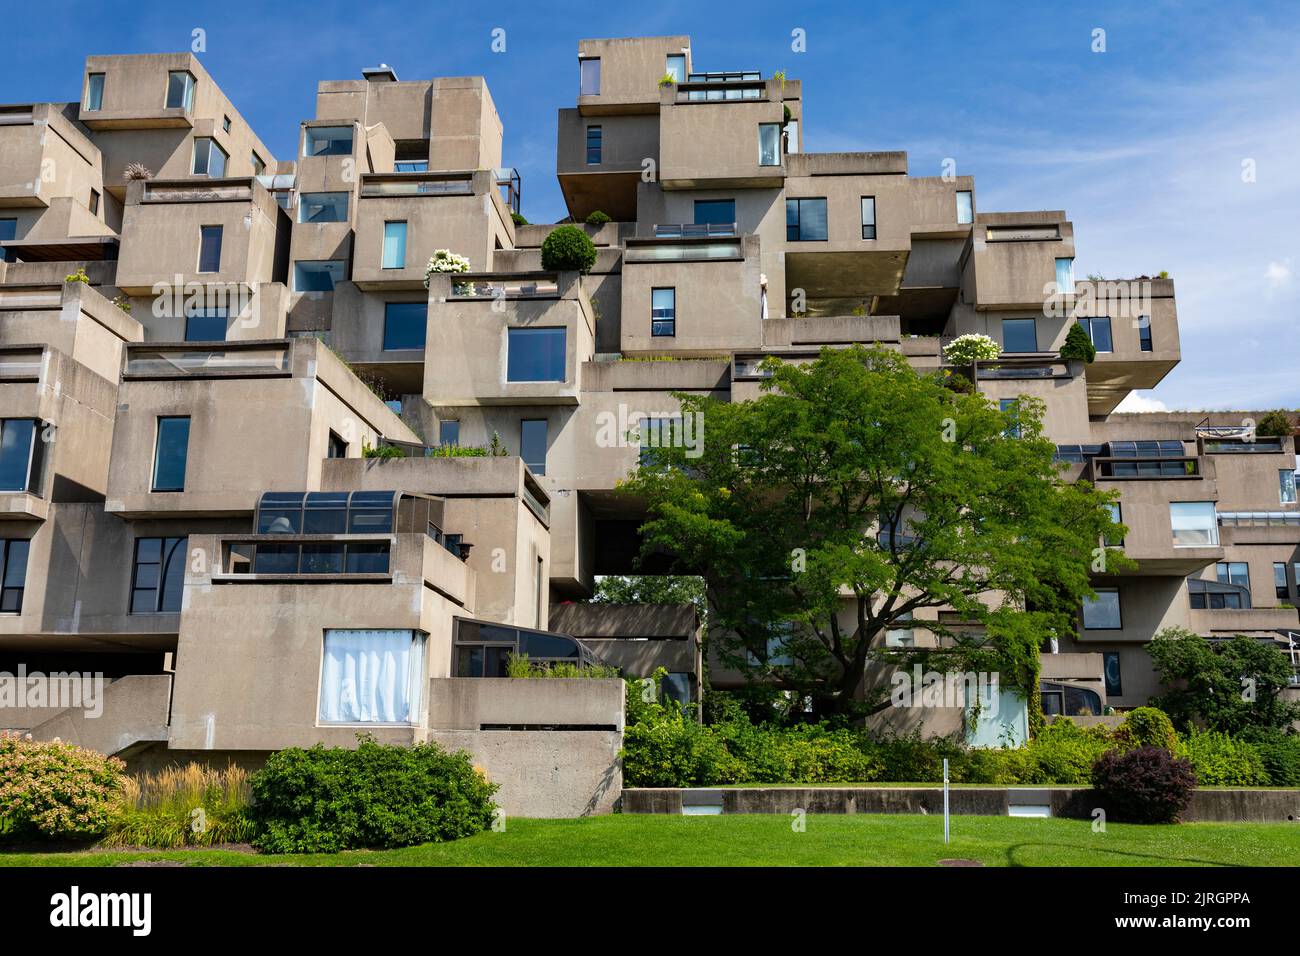 Habitat 67, moderne Architektur in Montreal, Kanada. Stockfoto